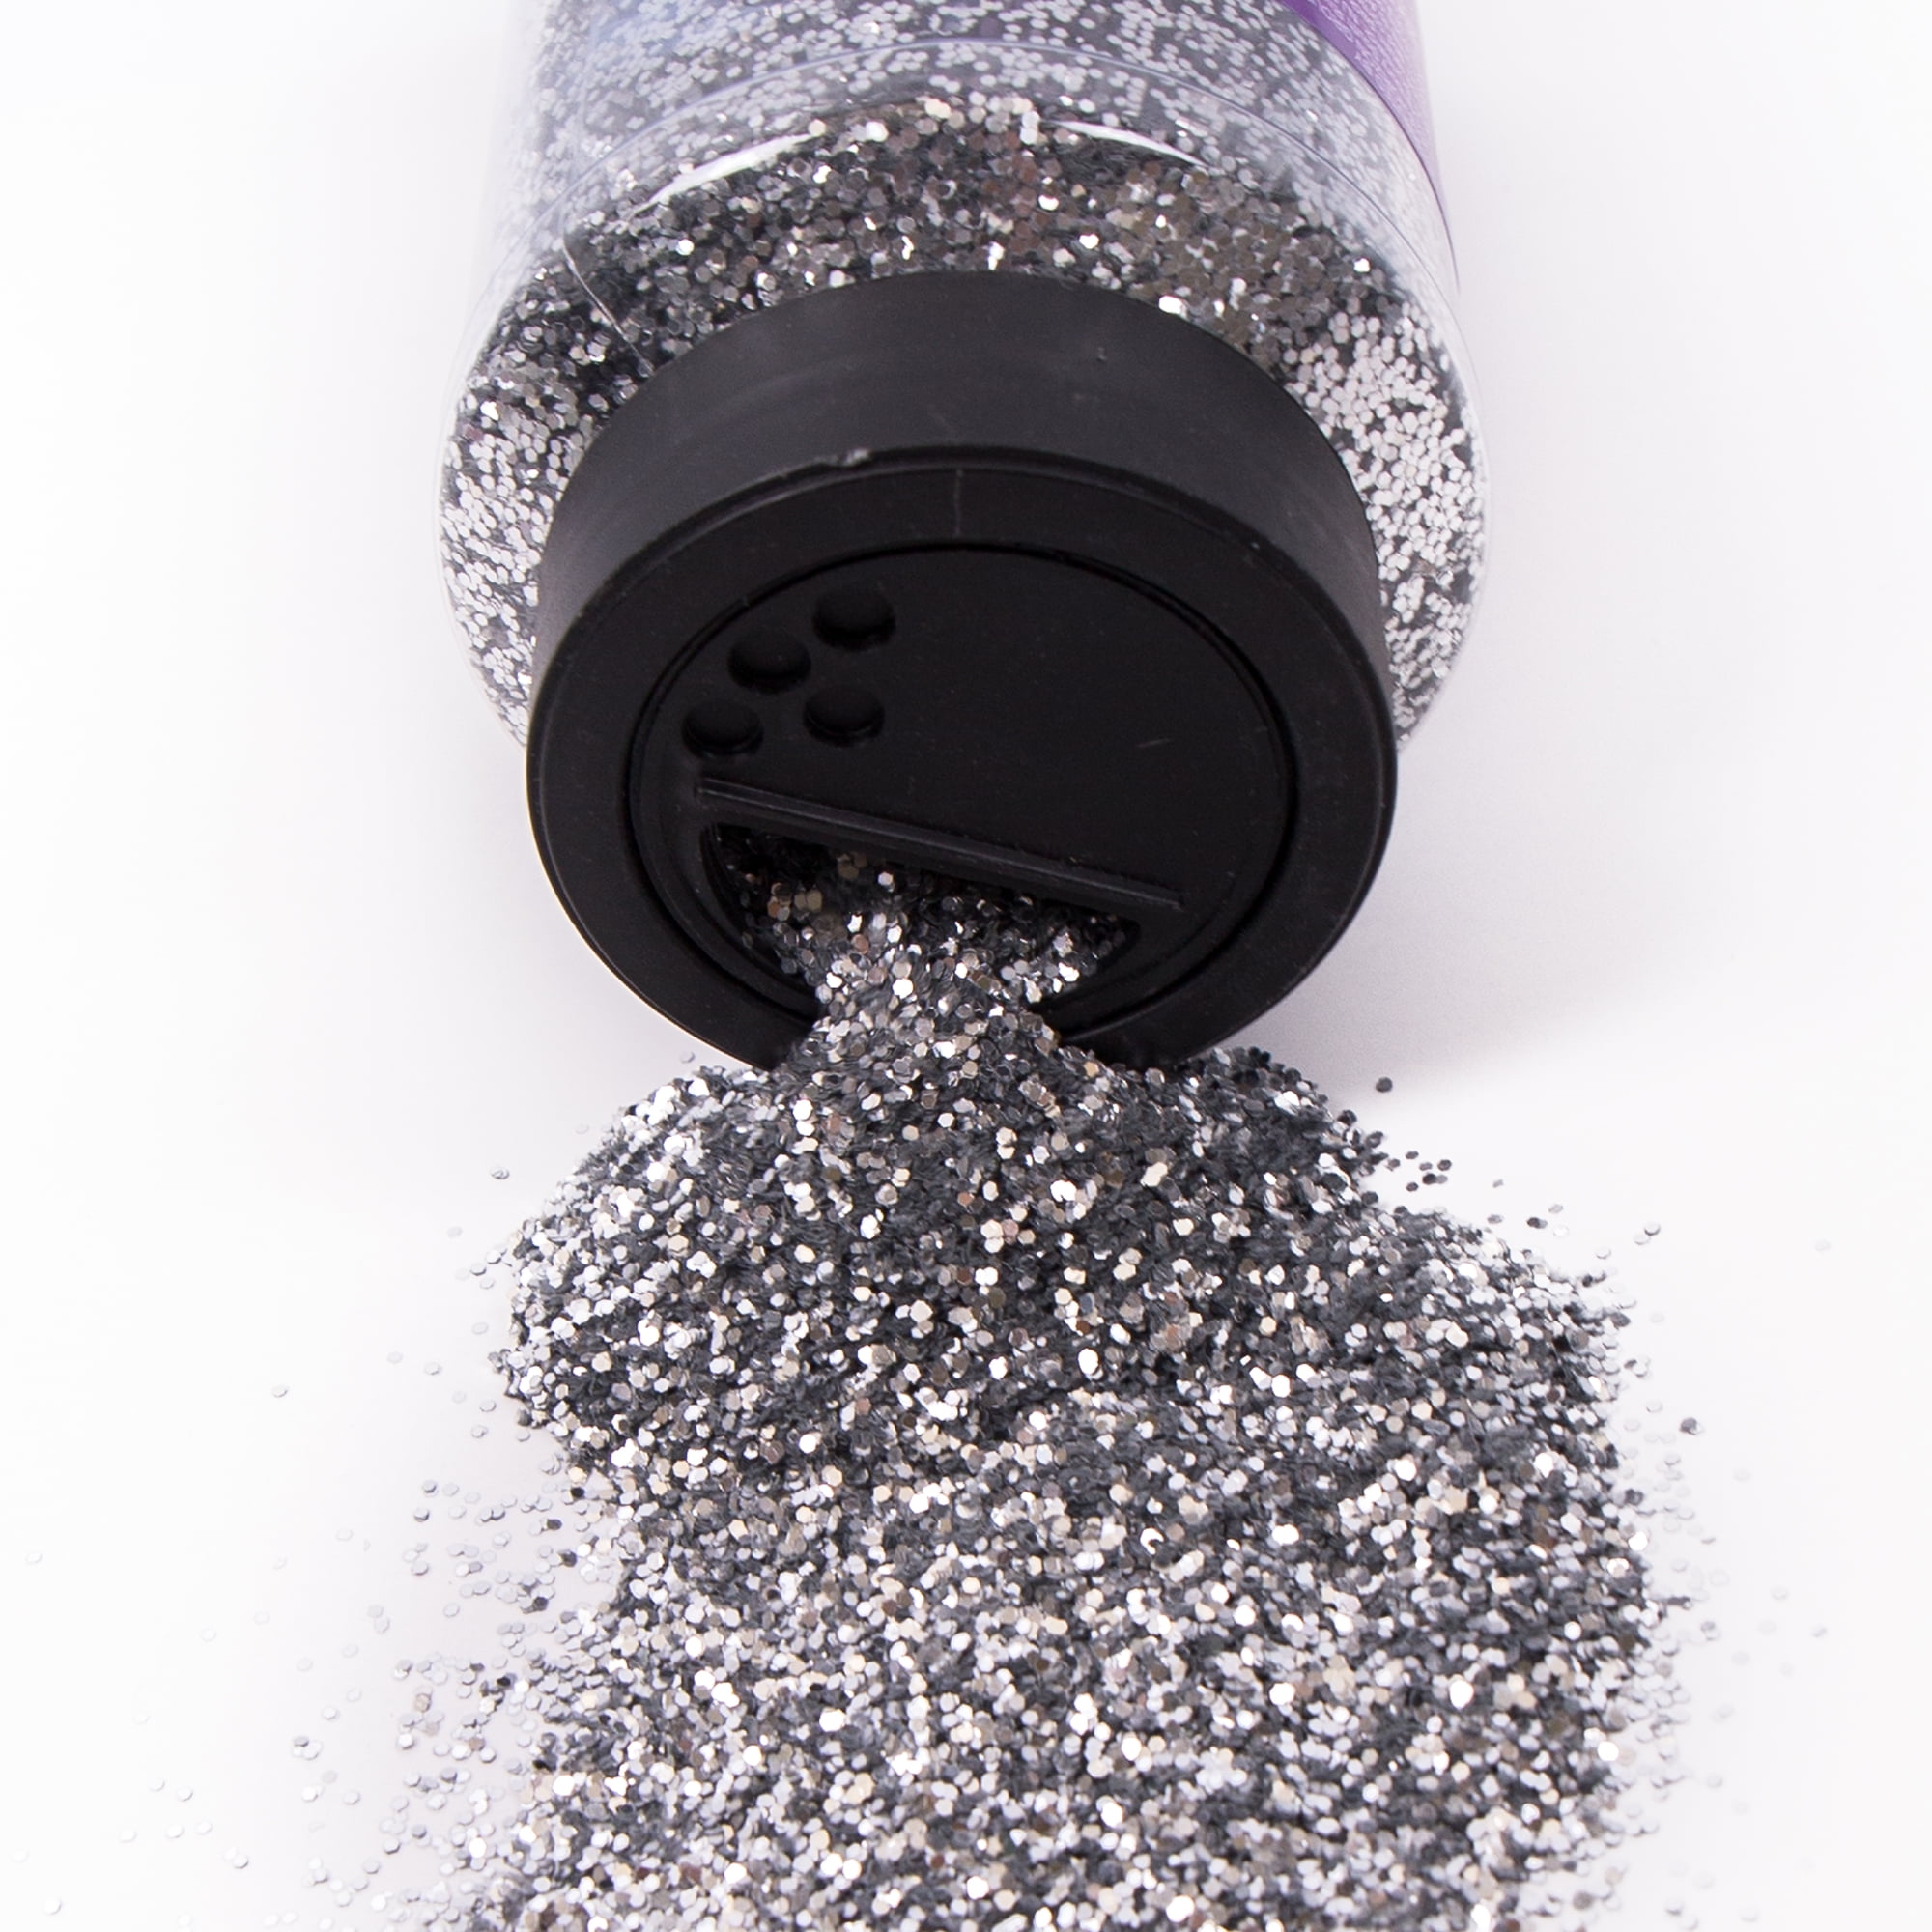 Go Create Sparkling Silver Glitter, 16 oz.